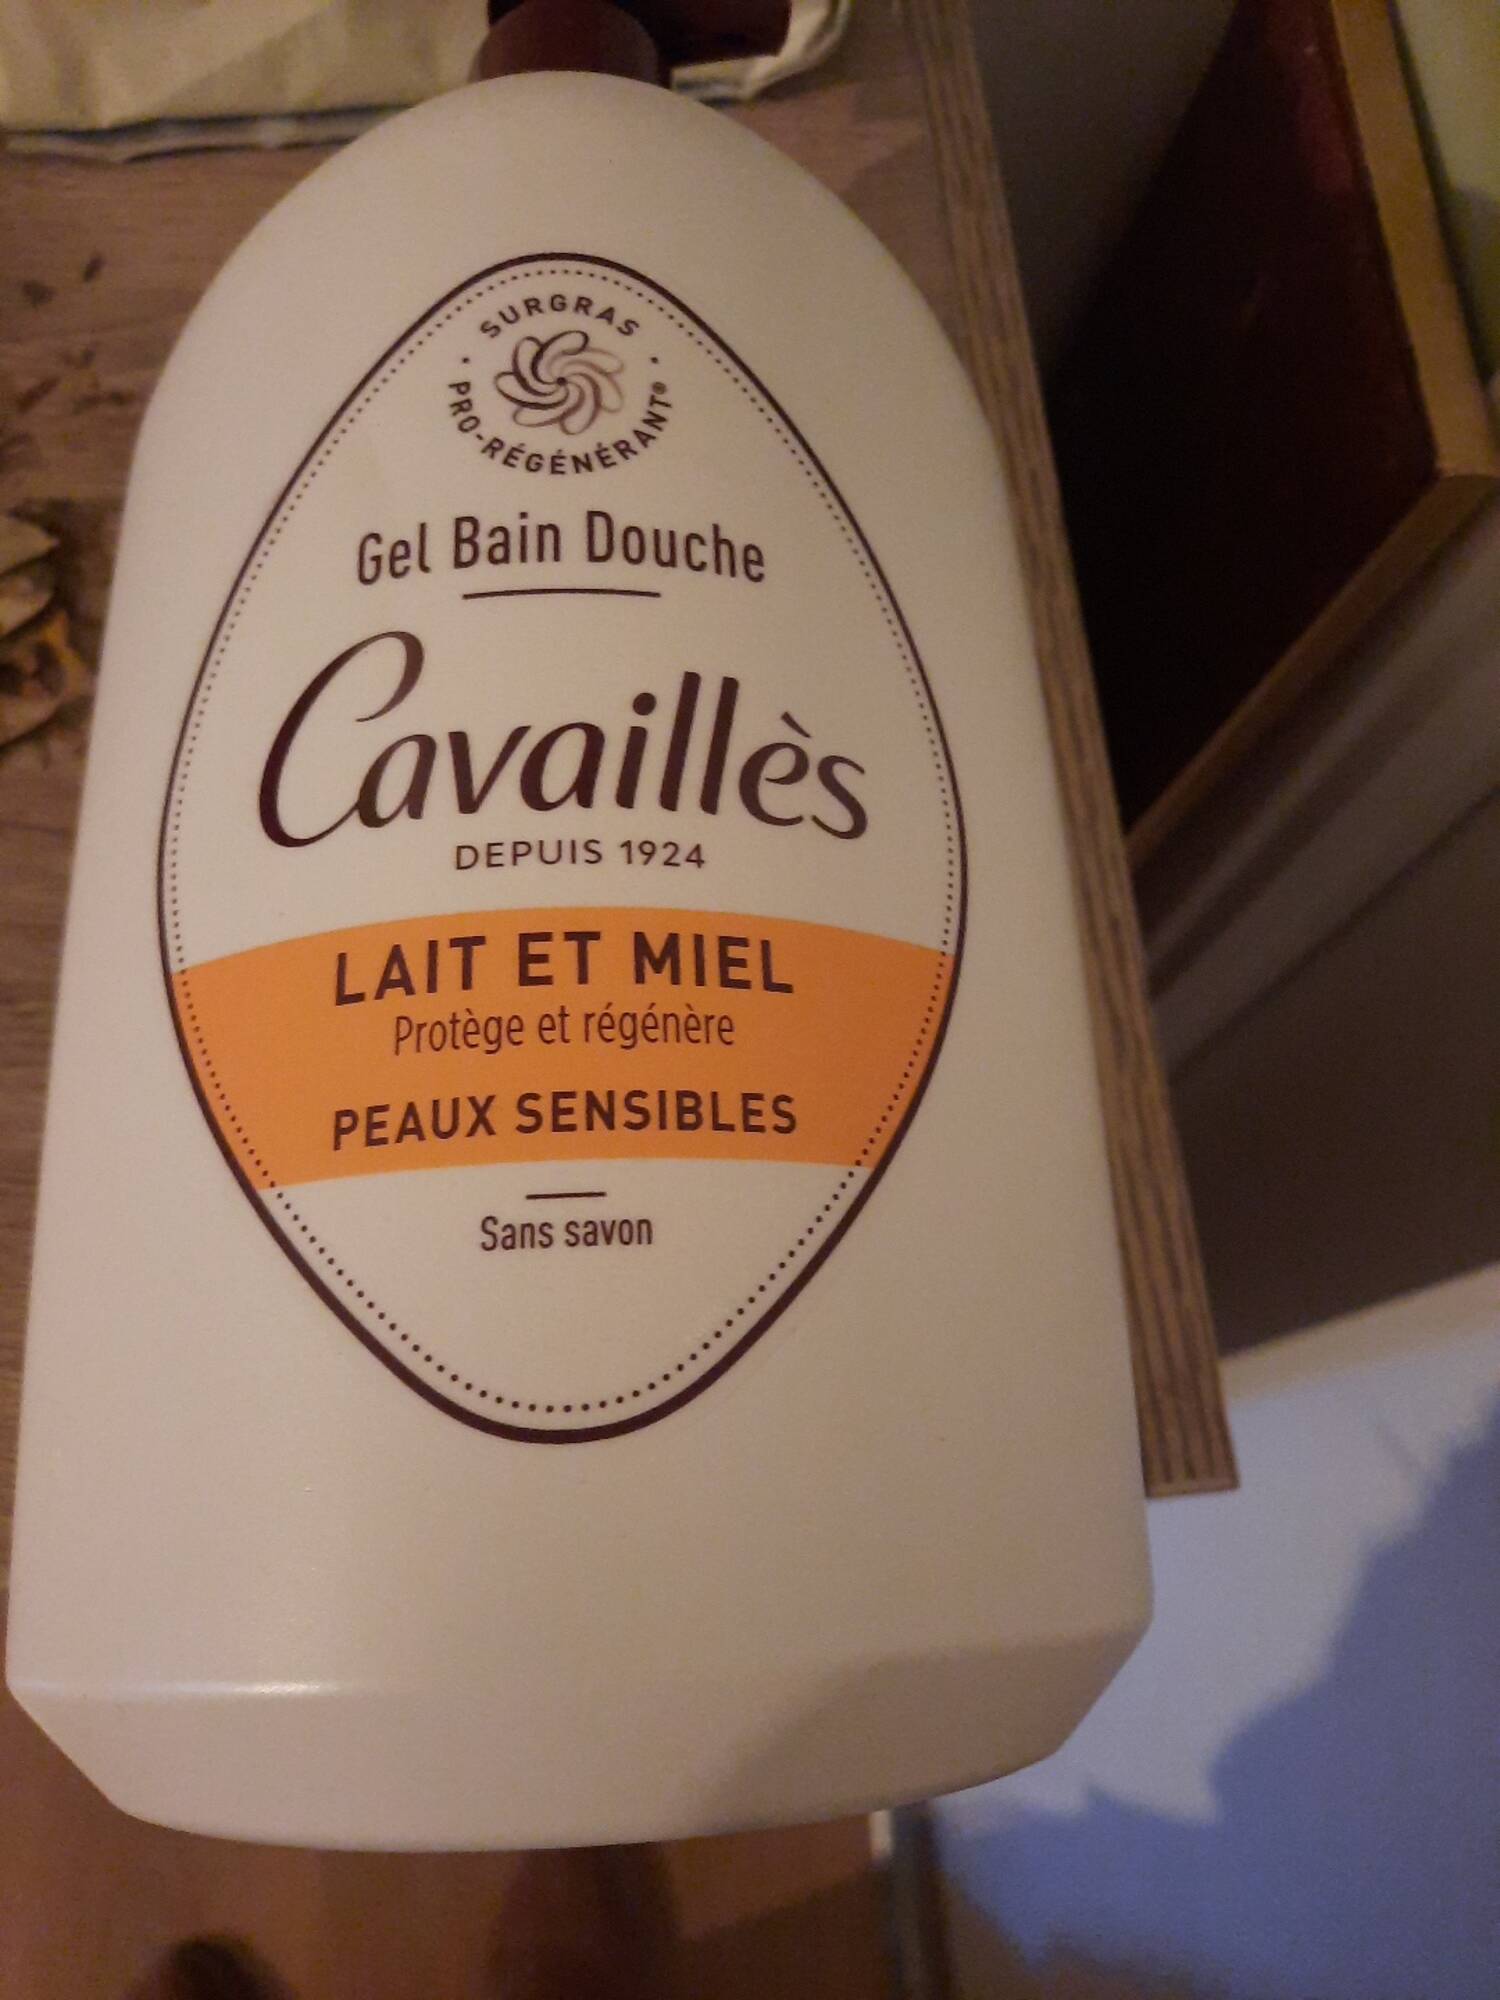 CAVAILLES - Gel bain douche lait et miel